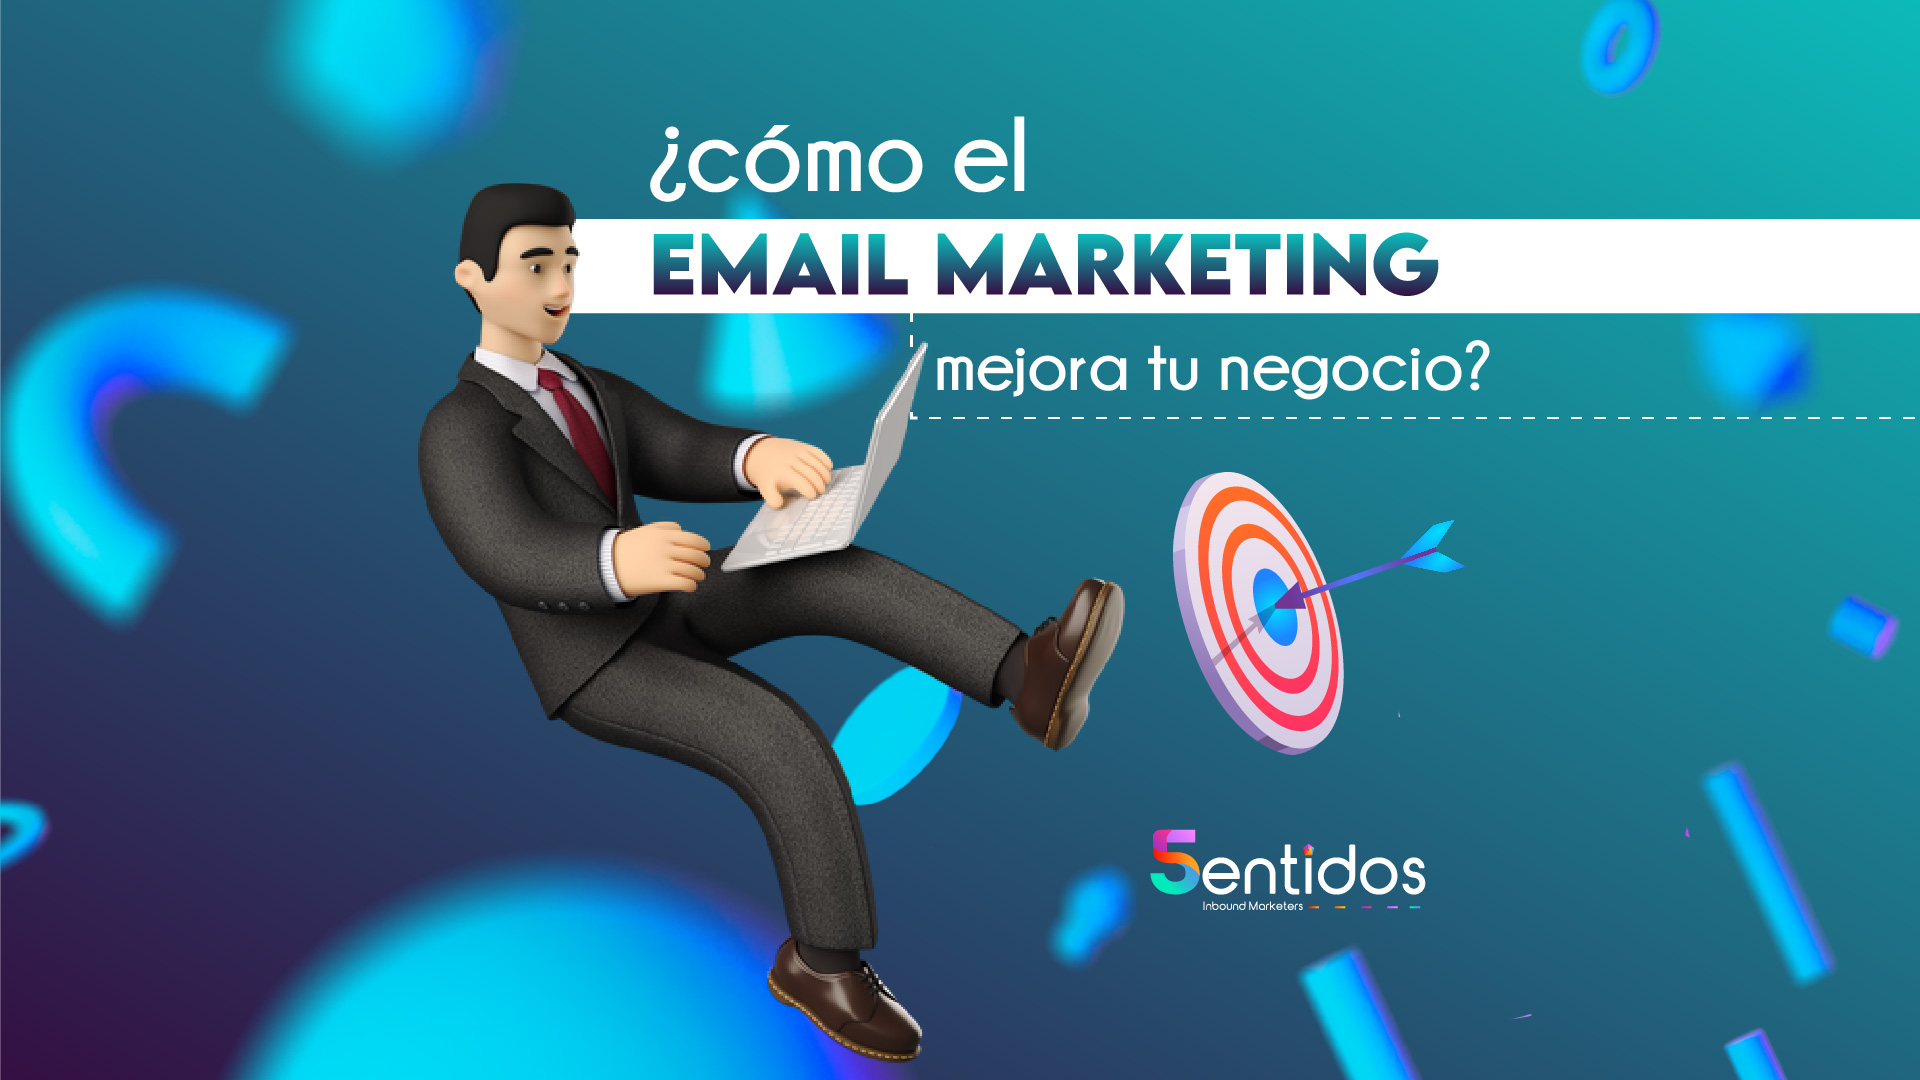 ¿Cómo el email marketing mejora tu negocio?